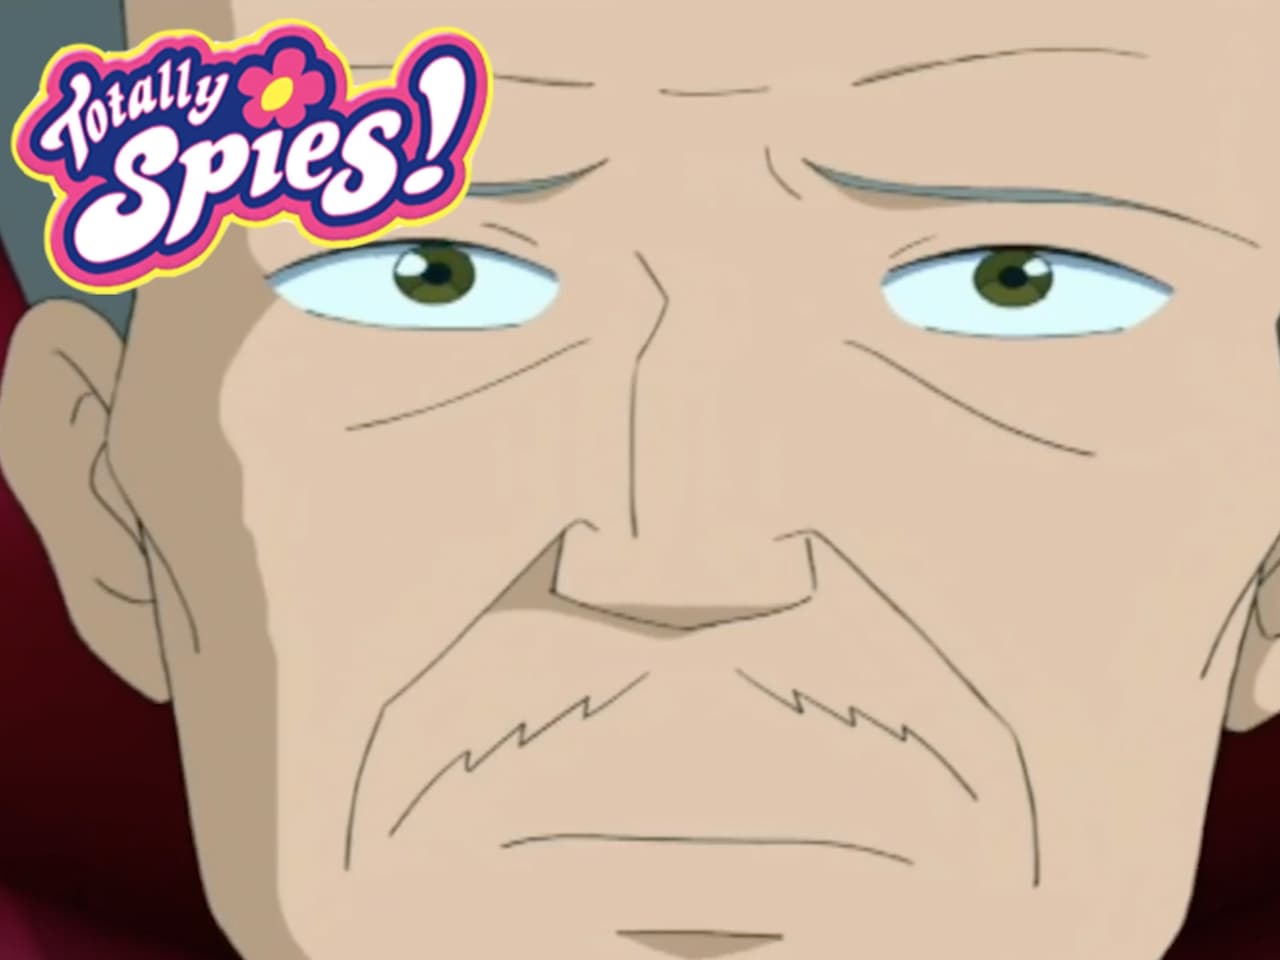 Totally Spies! - Season 4 Episode 2 : Futureshock!